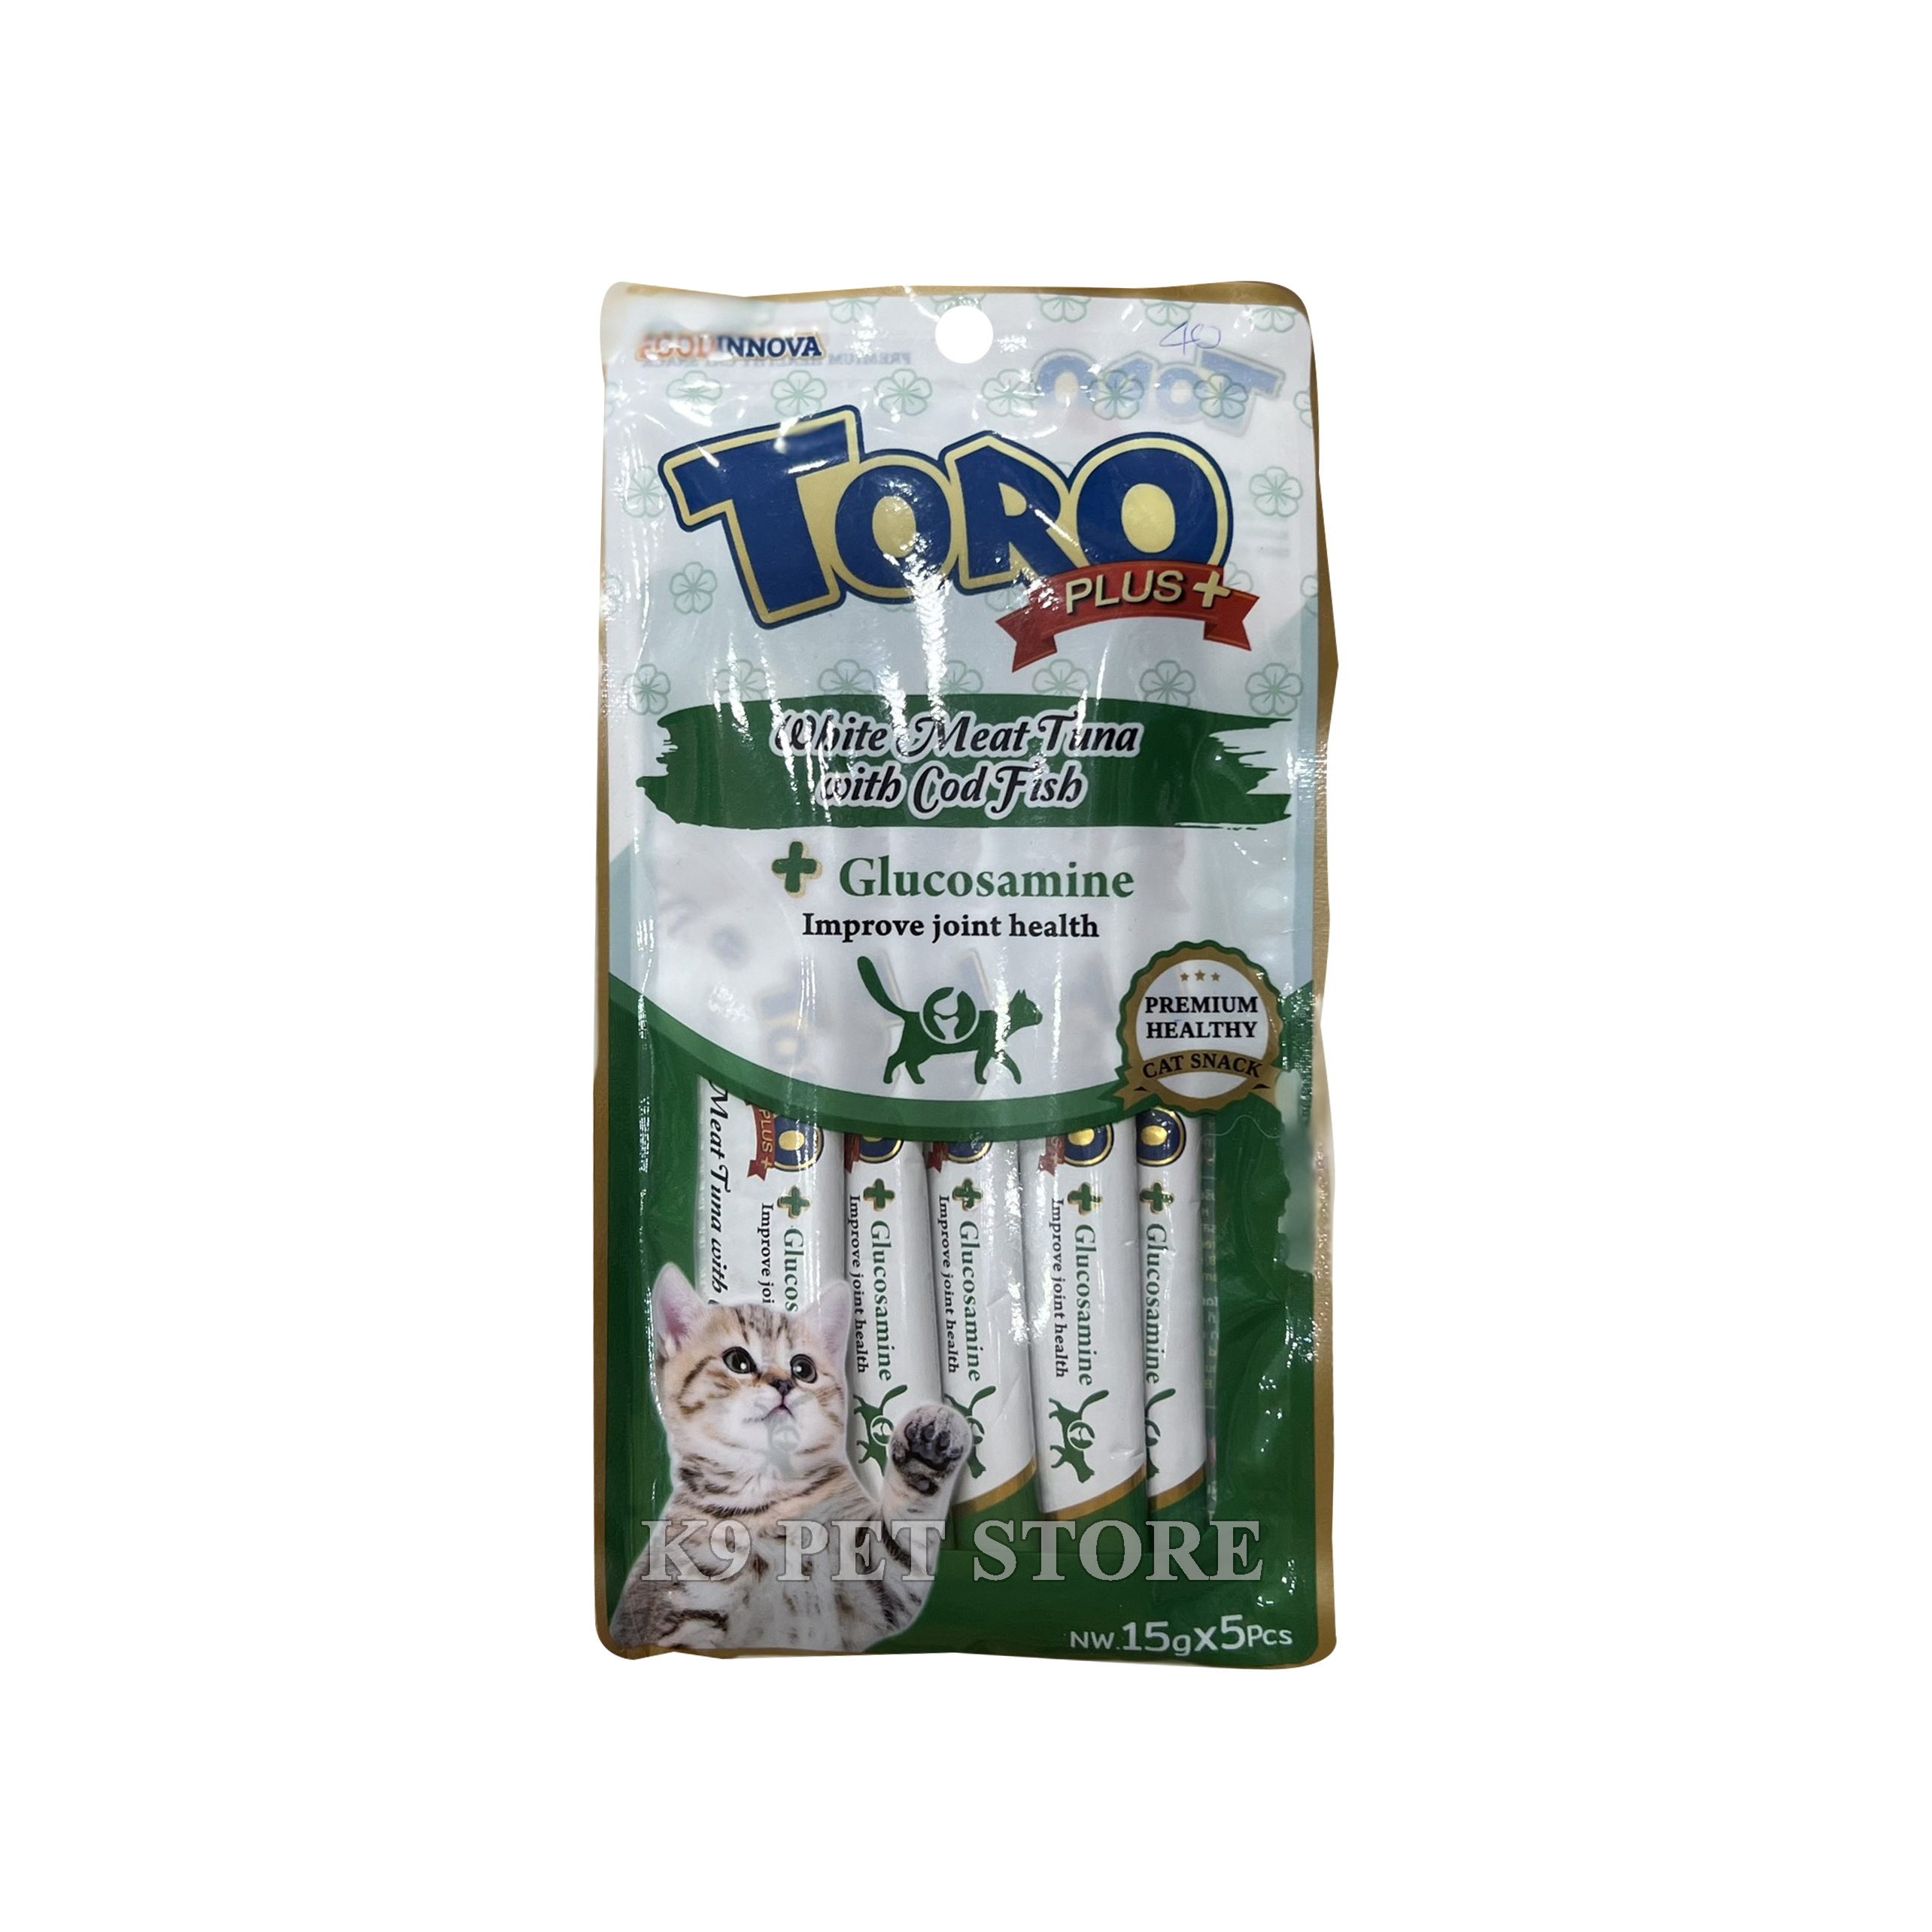 Súp thưởng cho mèo Toro Tuna Cold Fish Plus Glucosamine 15gx5